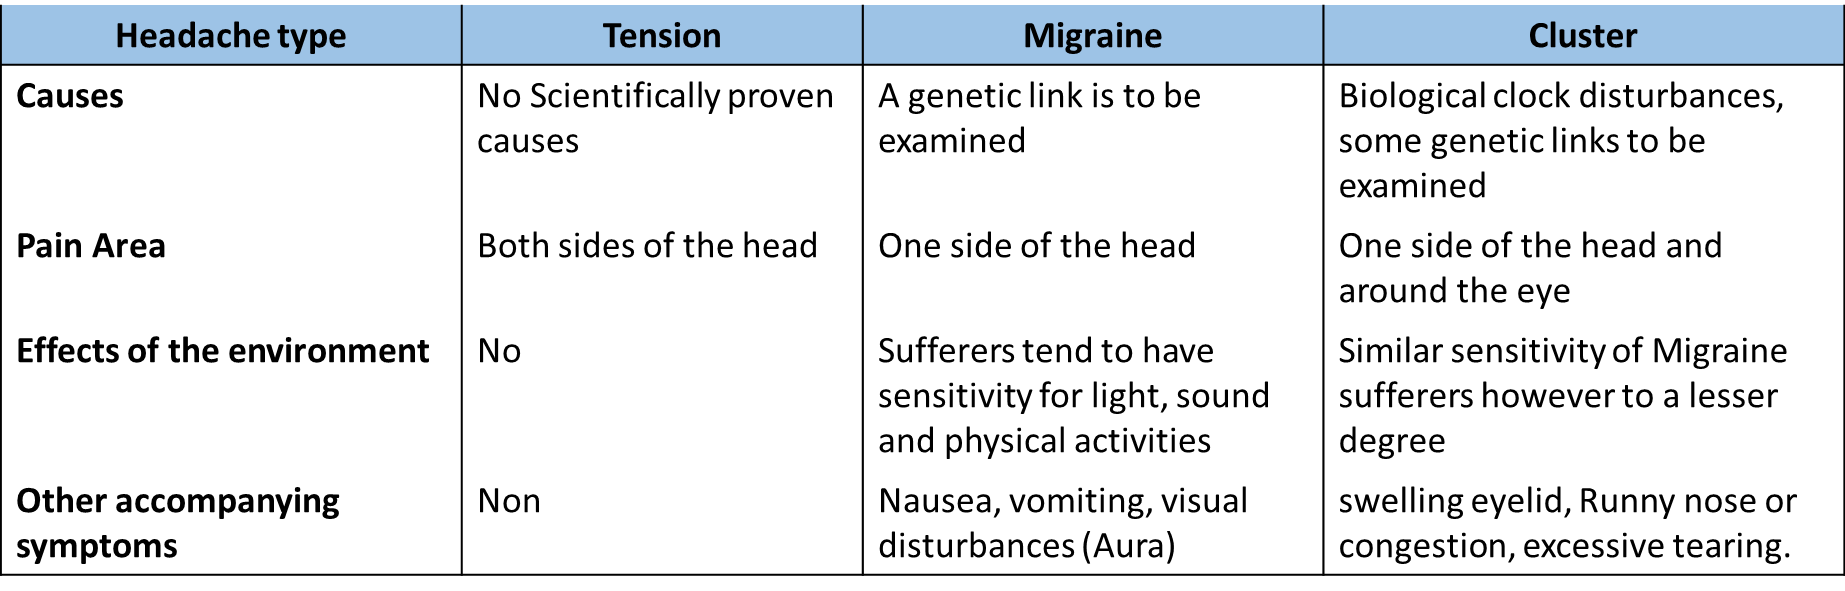 Headache types comparison